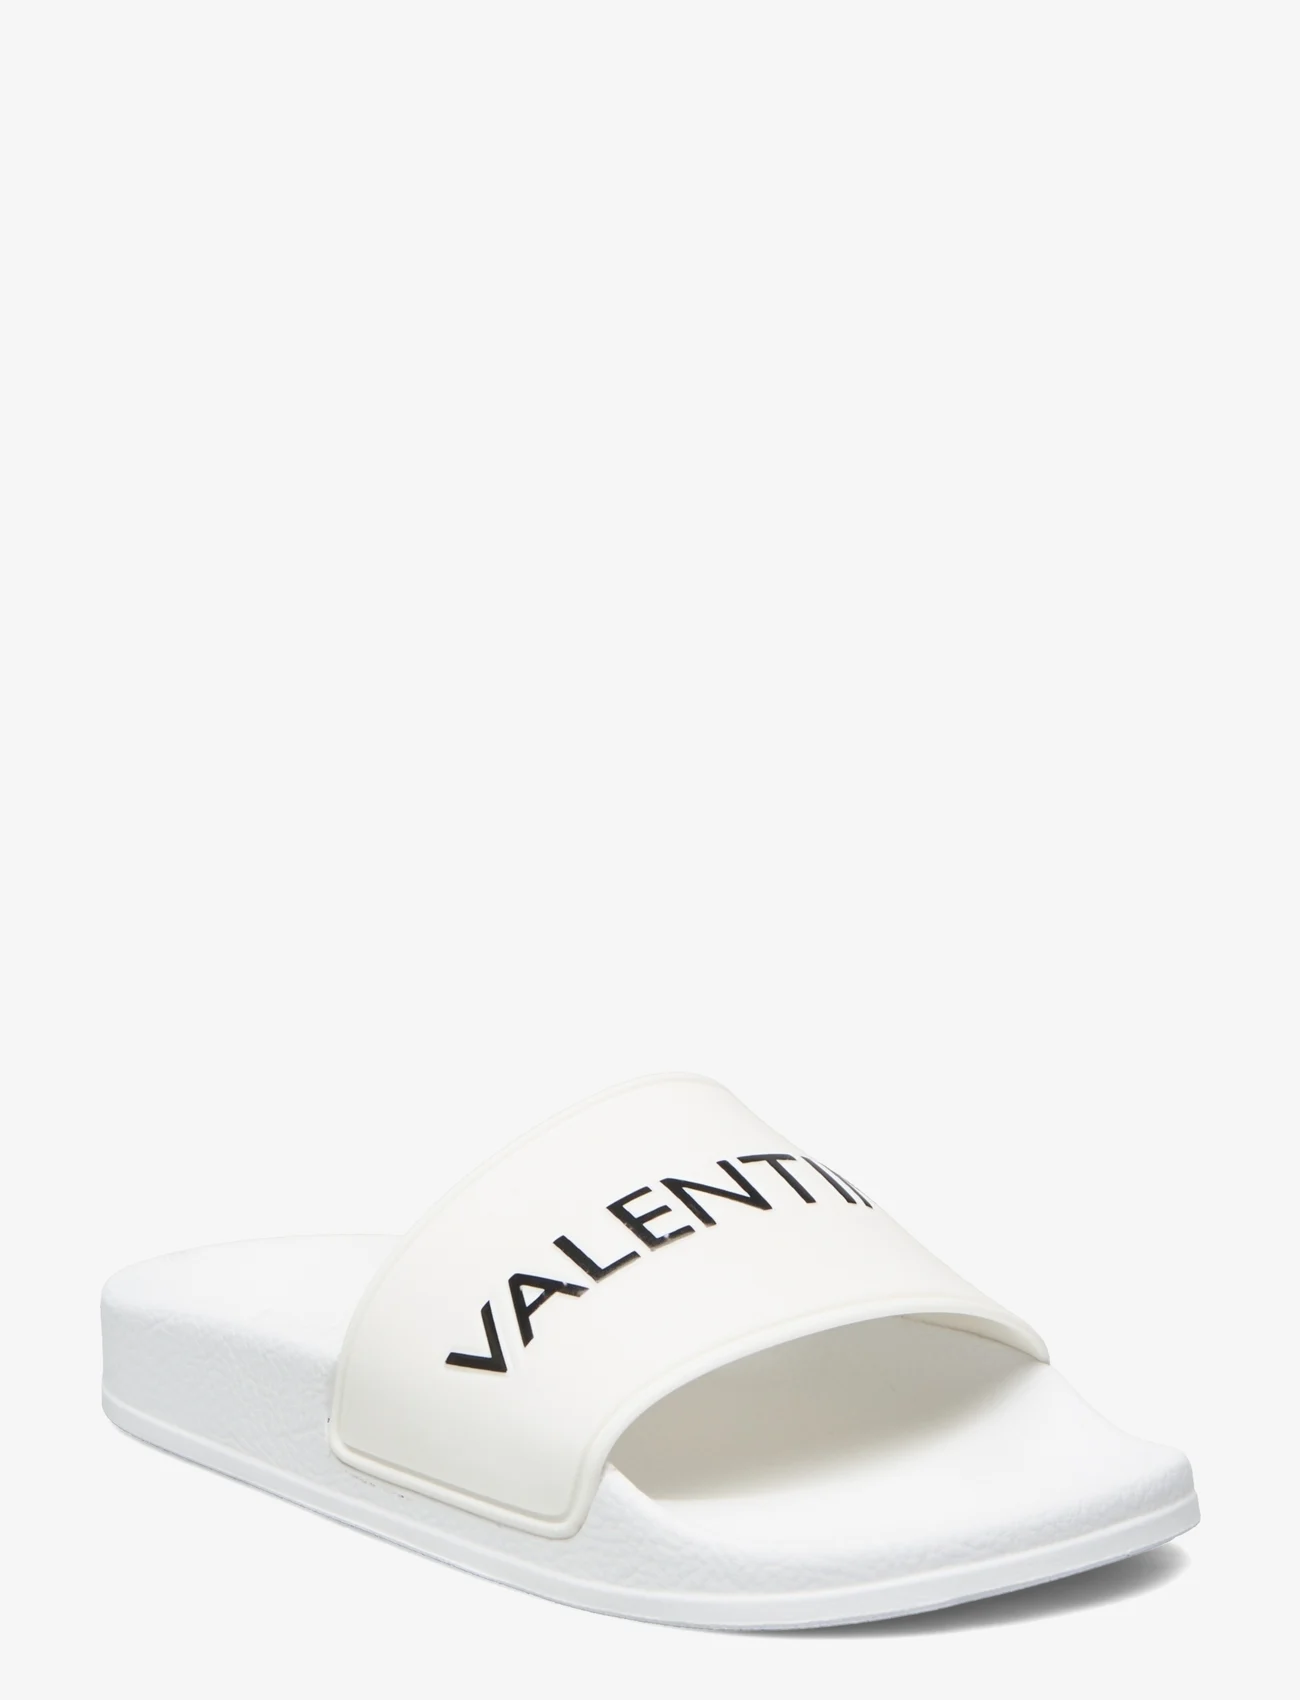 Valentino Shoes - XENIA SUMMER - kvinnor - white - 0